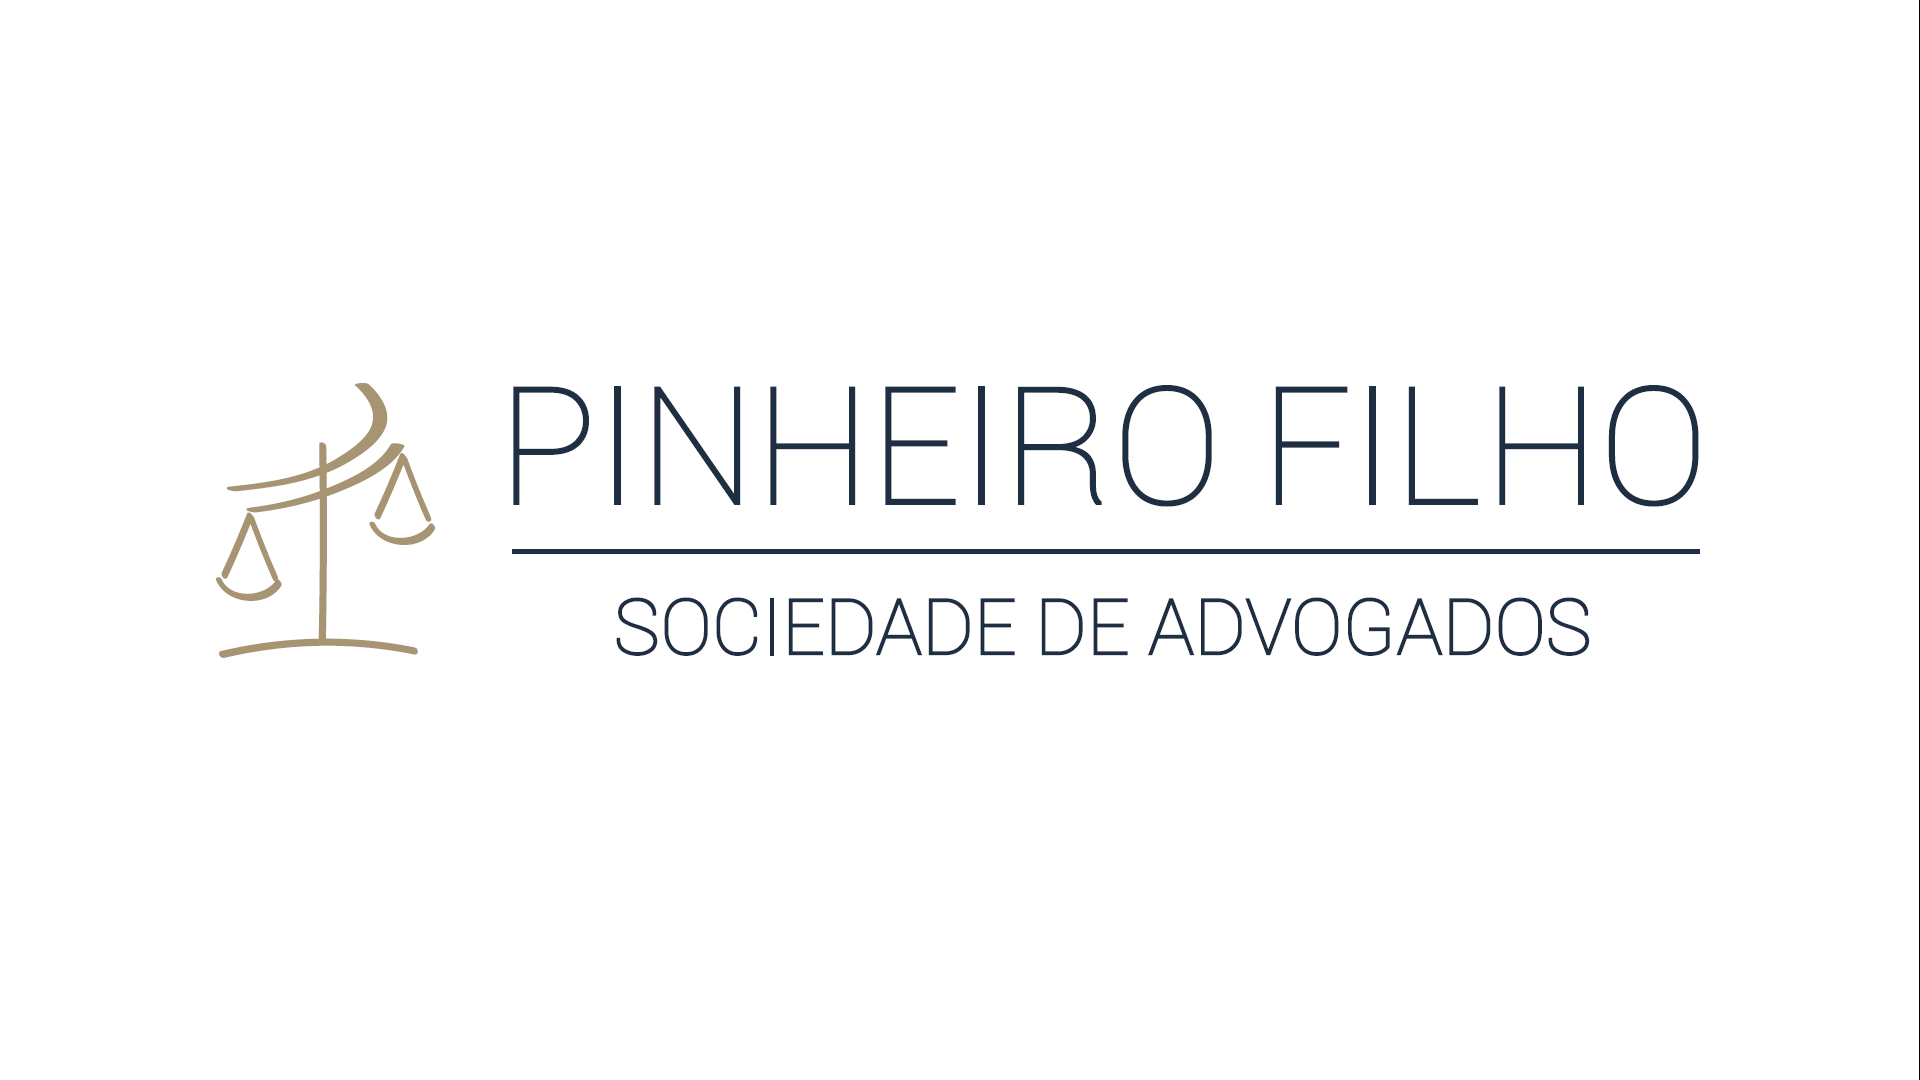 Winner Image - Pinheiro Filho Sociedade de Advogados